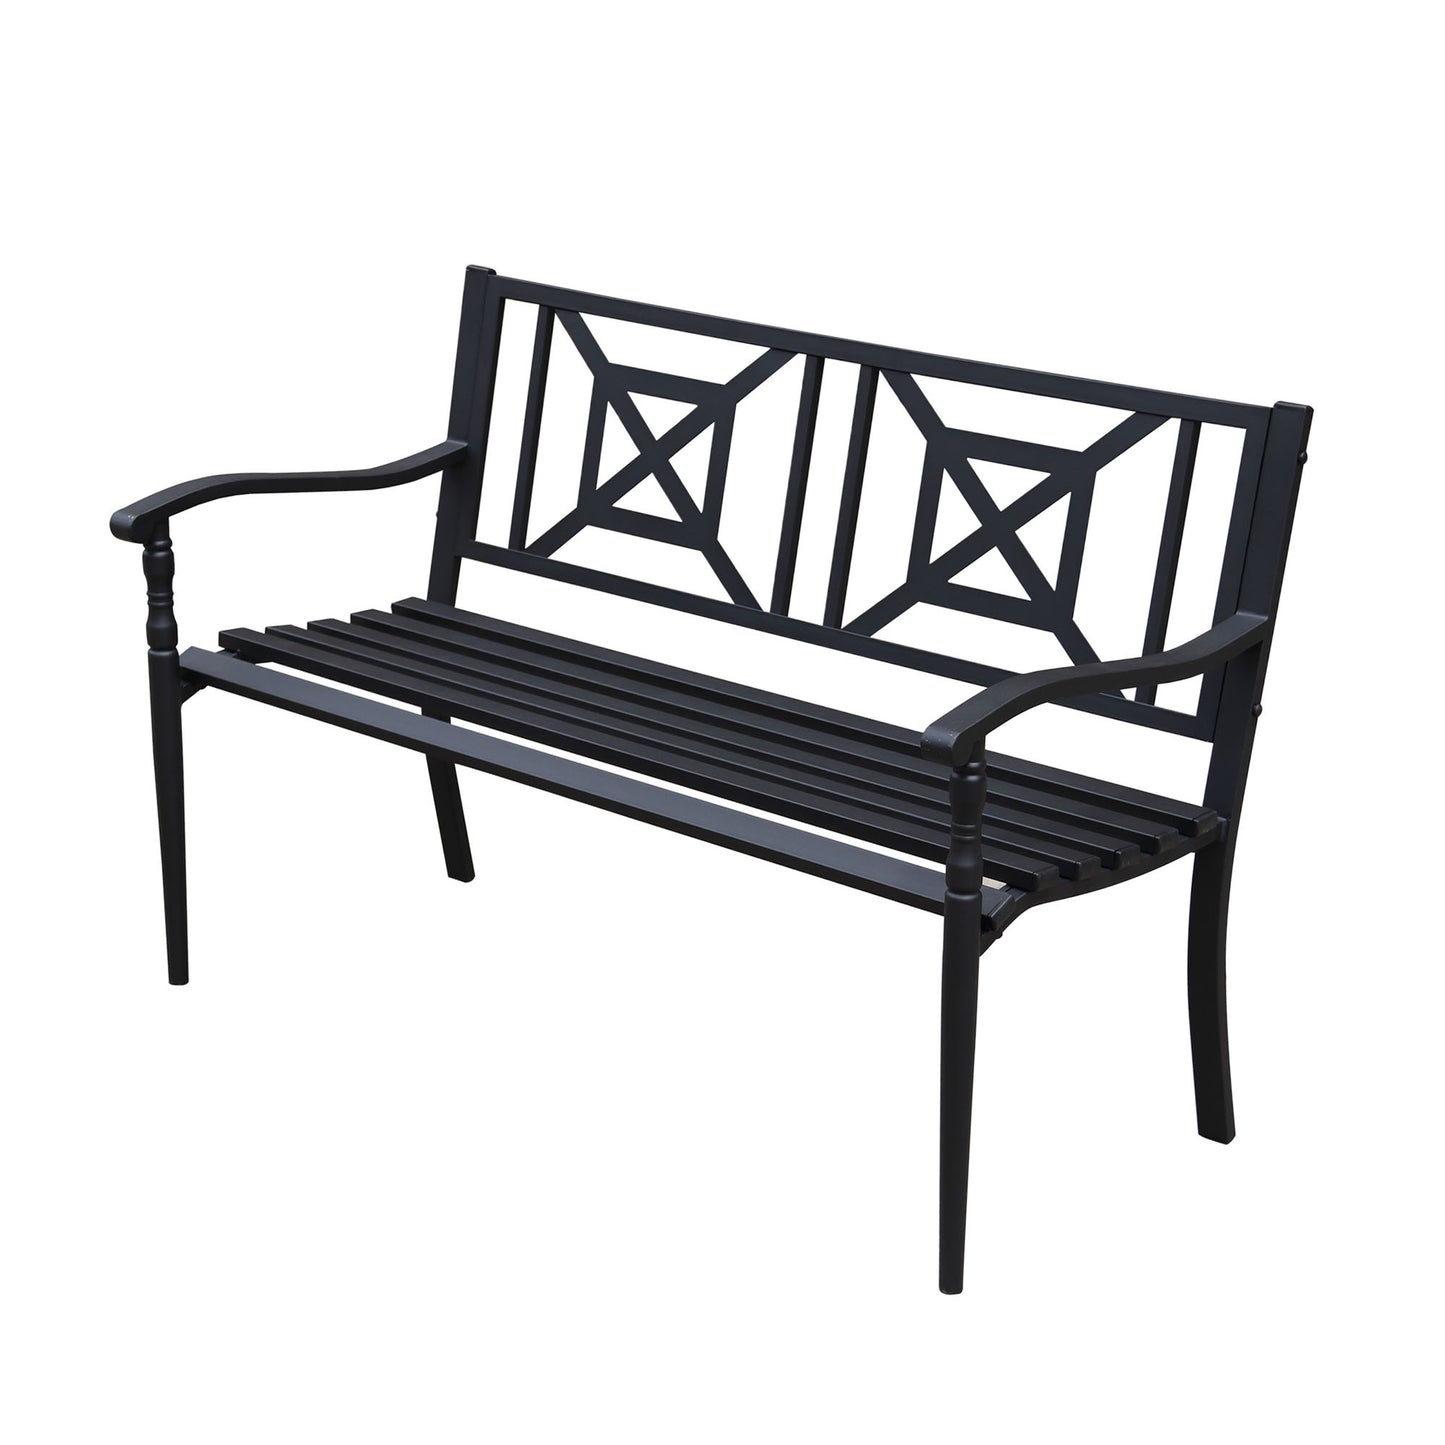 50 in. Deco Steel Outdoor Garden Bench - Black